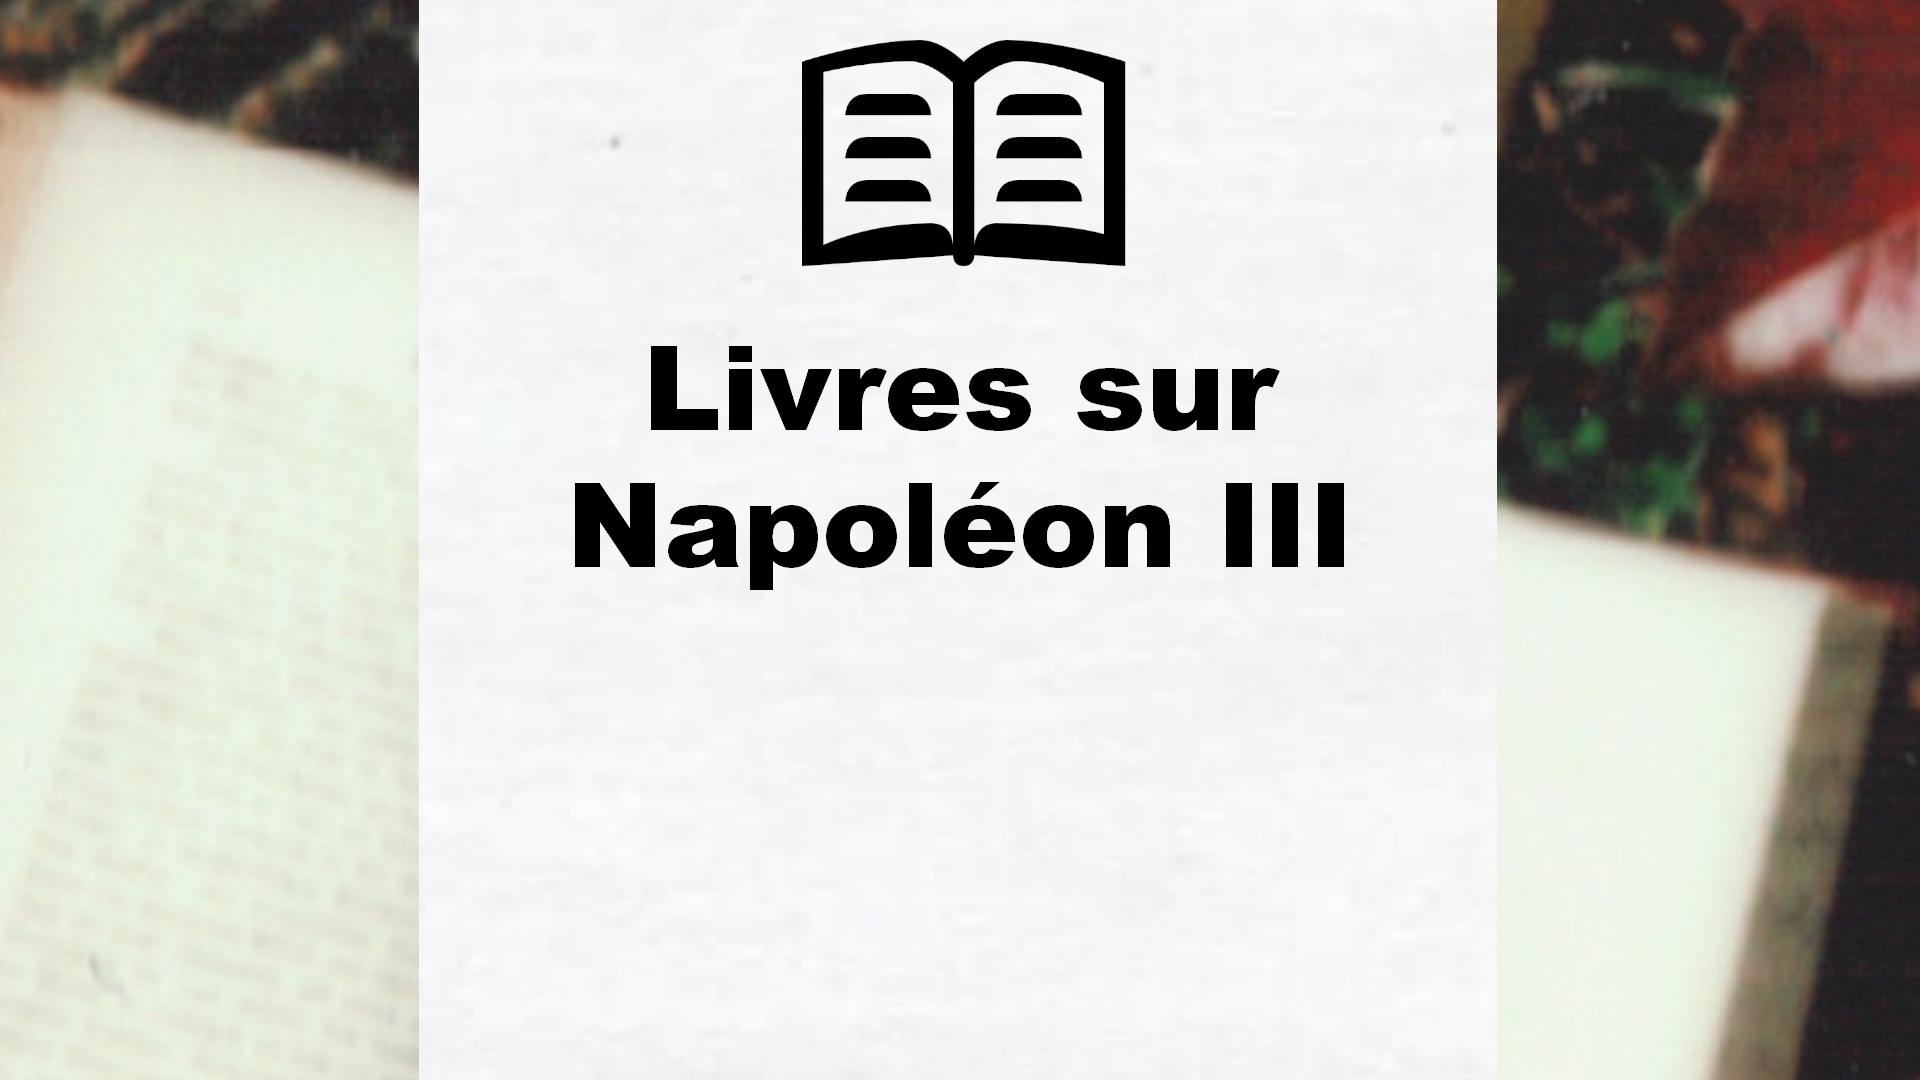 Livres sur Napoléon III